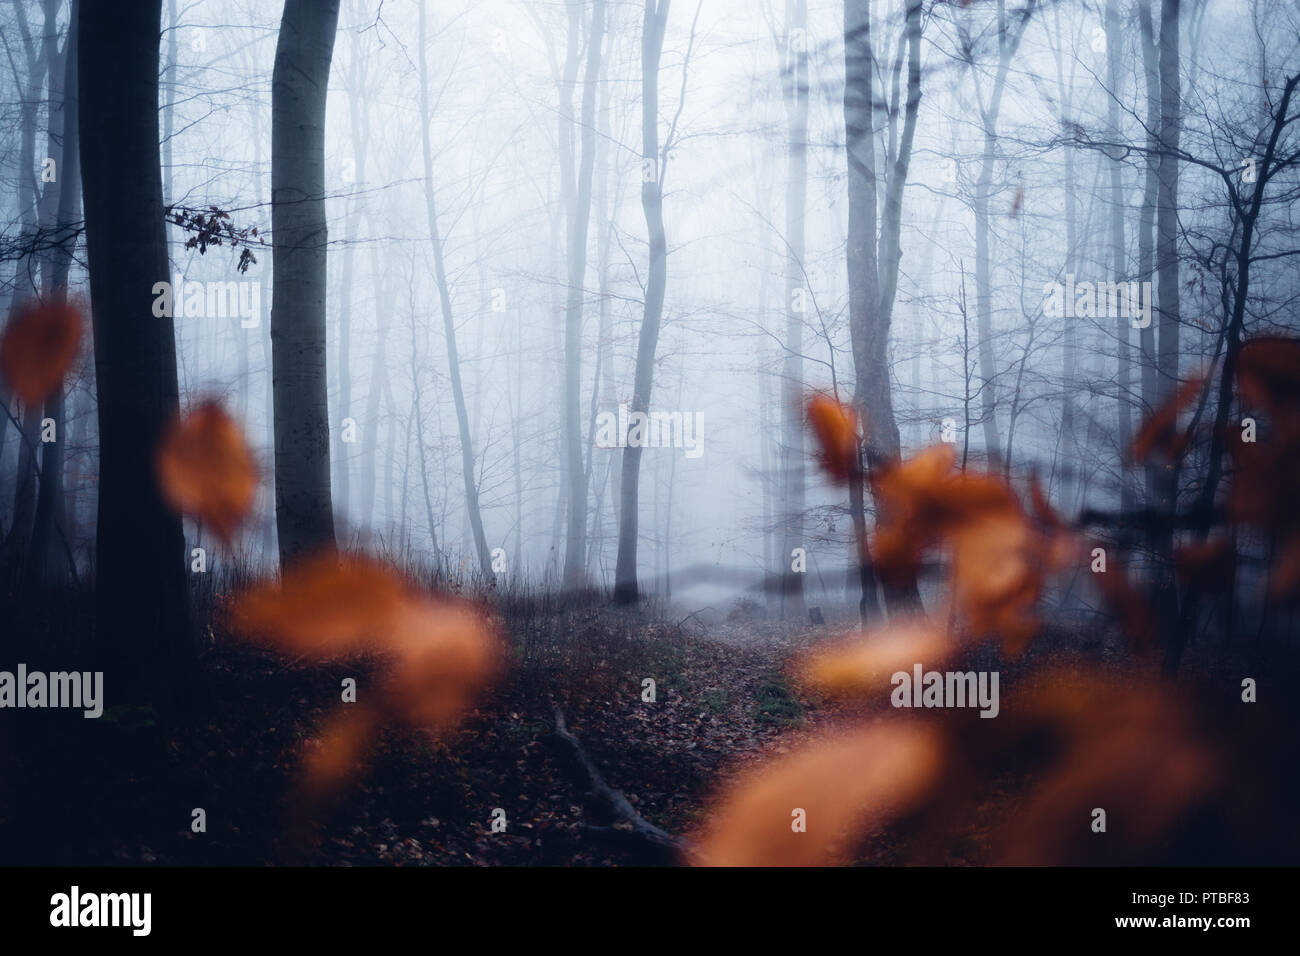 Dunklen mystischen Nebelwald, der Vordergrund ein Paar echte Blätter Stockfoto